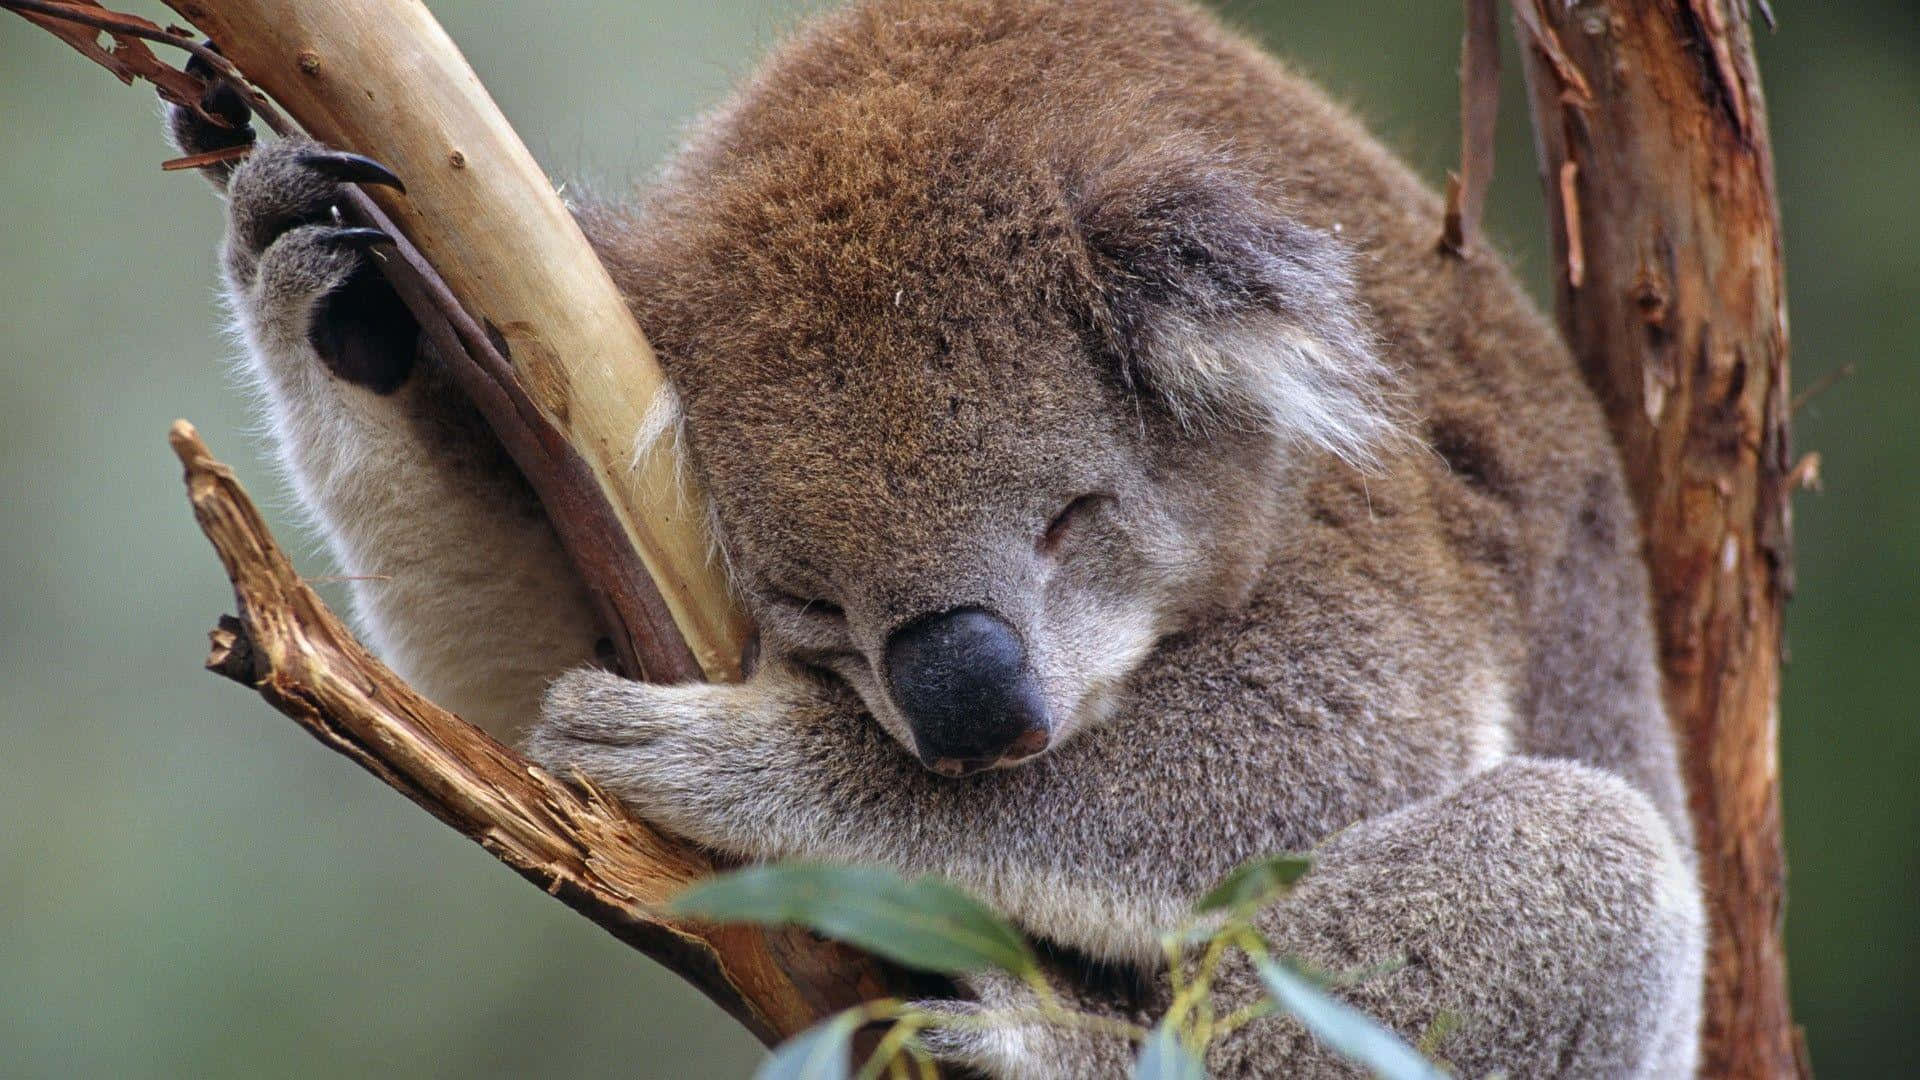 Cuddly koala taking a nap